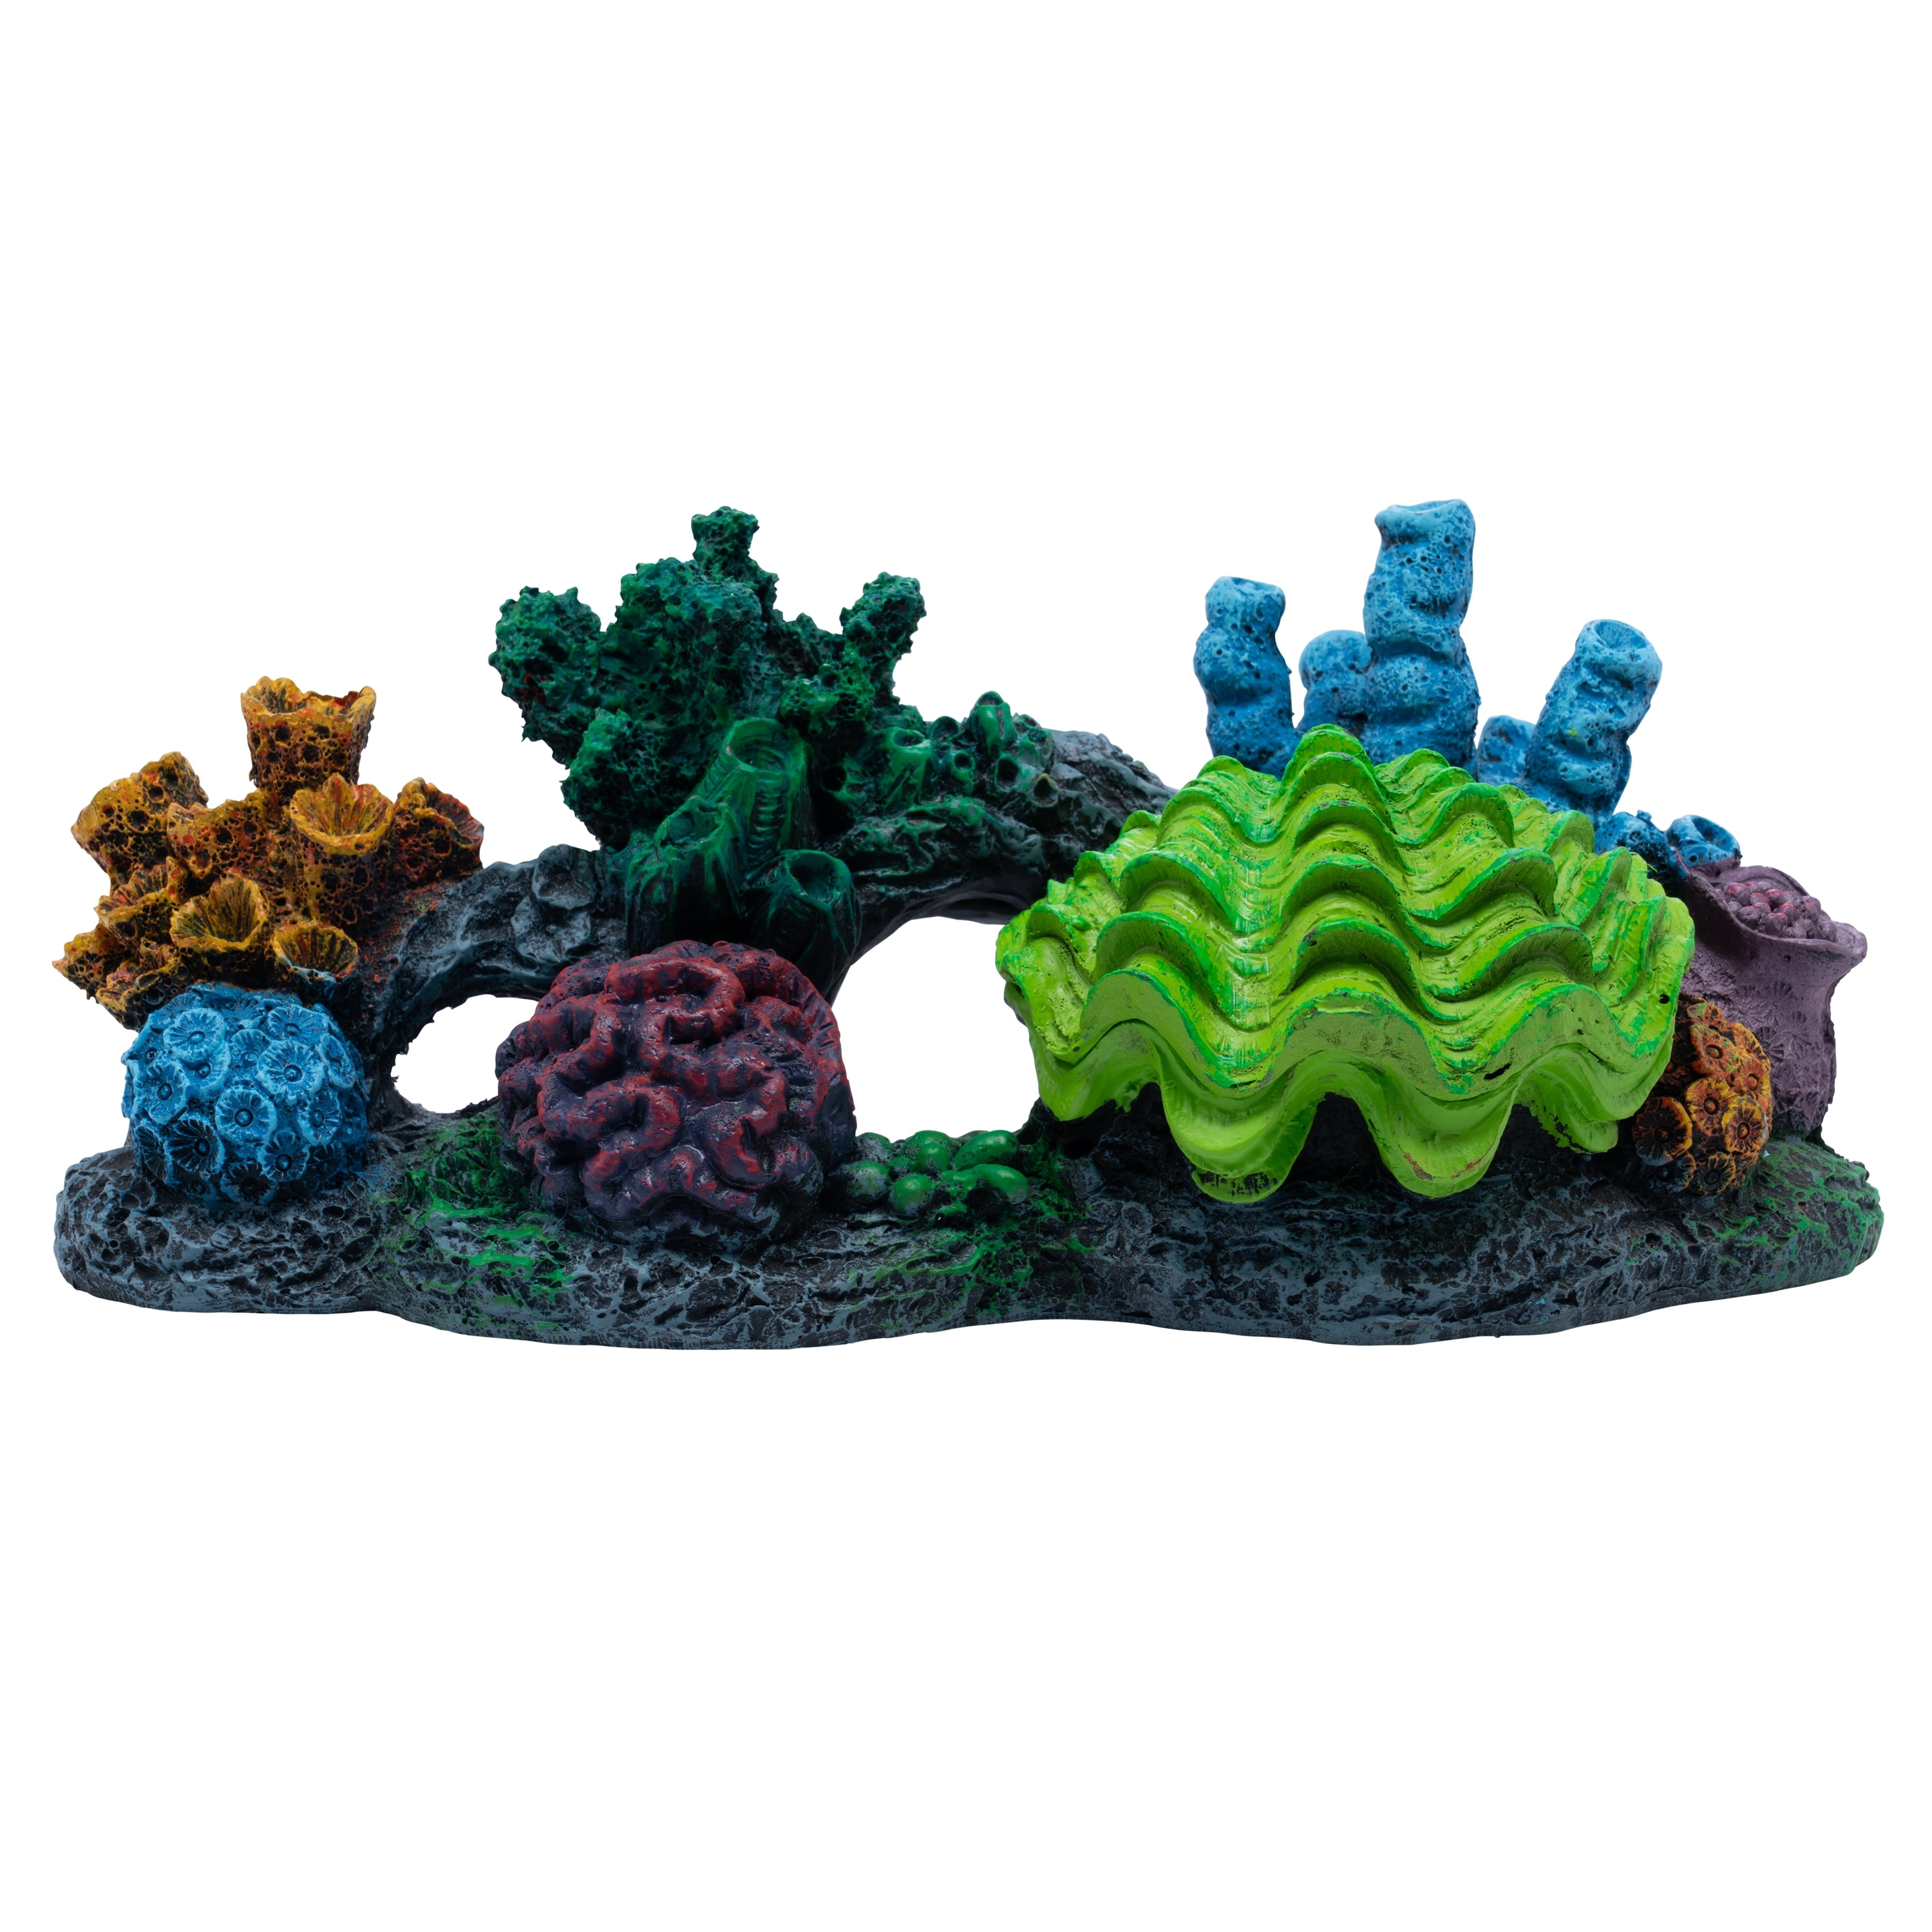 Coral Reef Reef Ceramics Seawater Aquarium Decoration